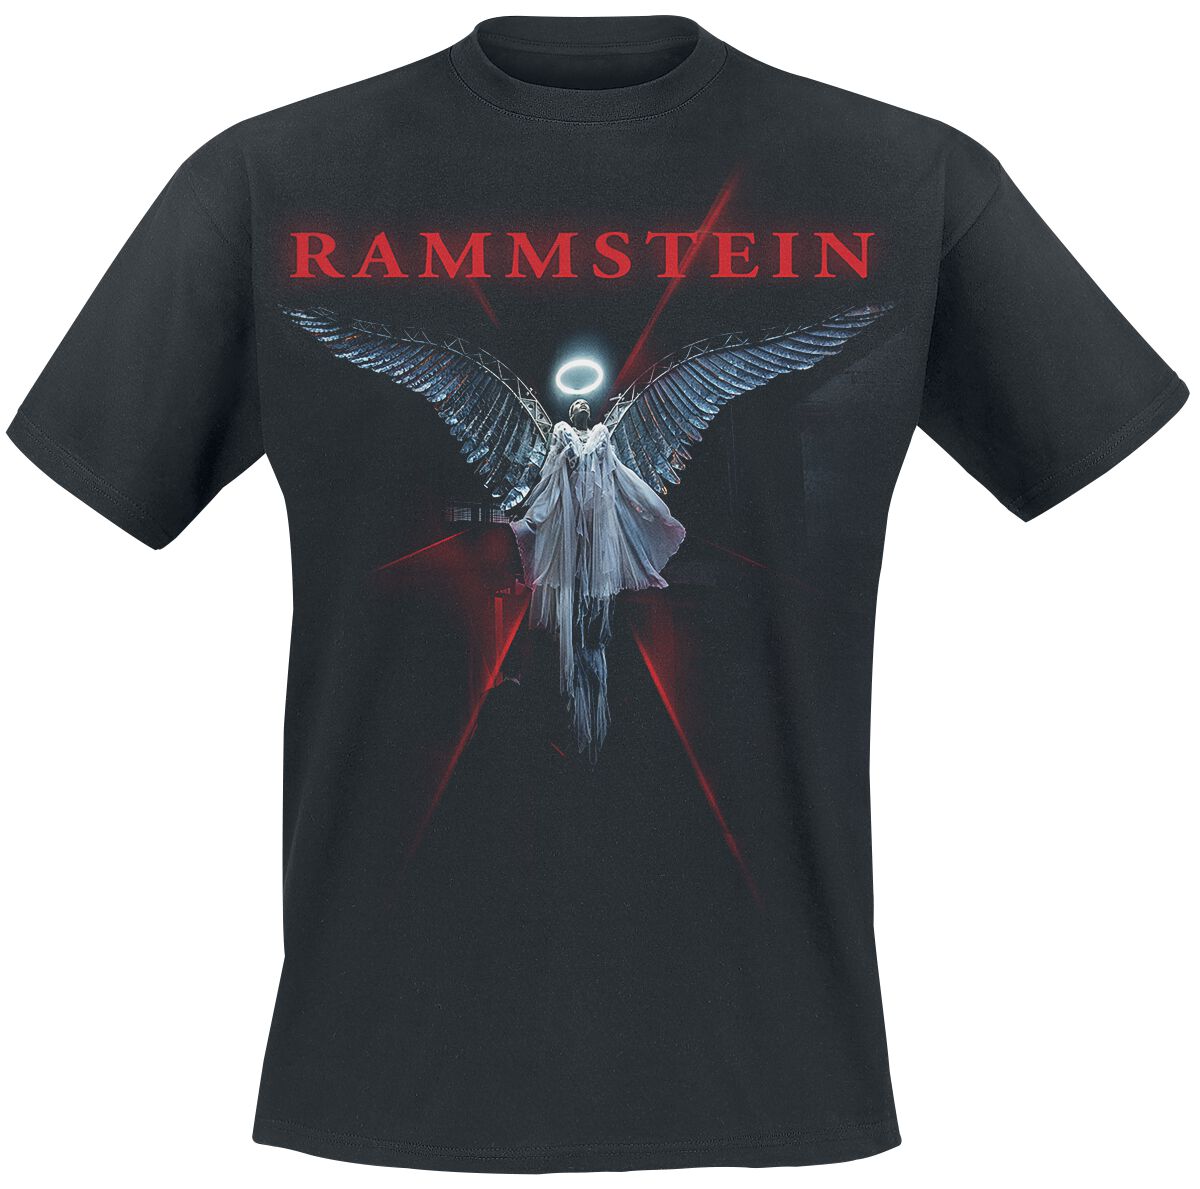 Rammstein T-Shirt - Du-Ich-Wir-Ihr - S bis 5XL - für Männer - Größe M - schwarz  - Lizenziertes Merchandise!